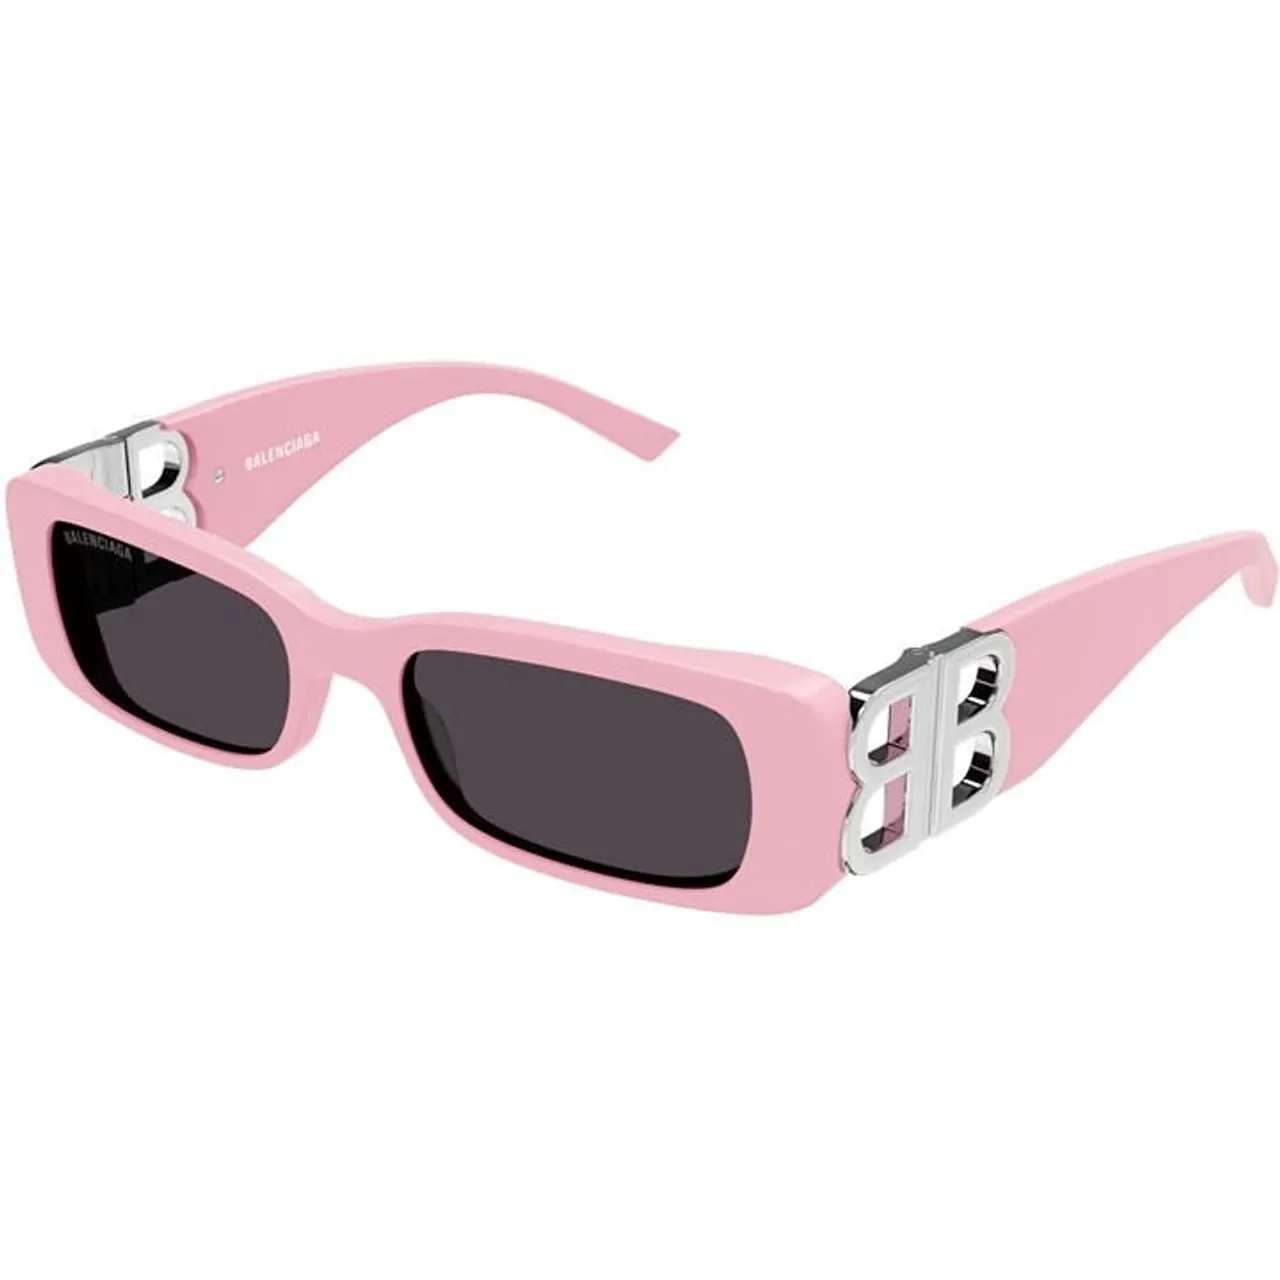 BALENCIAGA Balenciaga Sunglasses Bb0096s - Pink